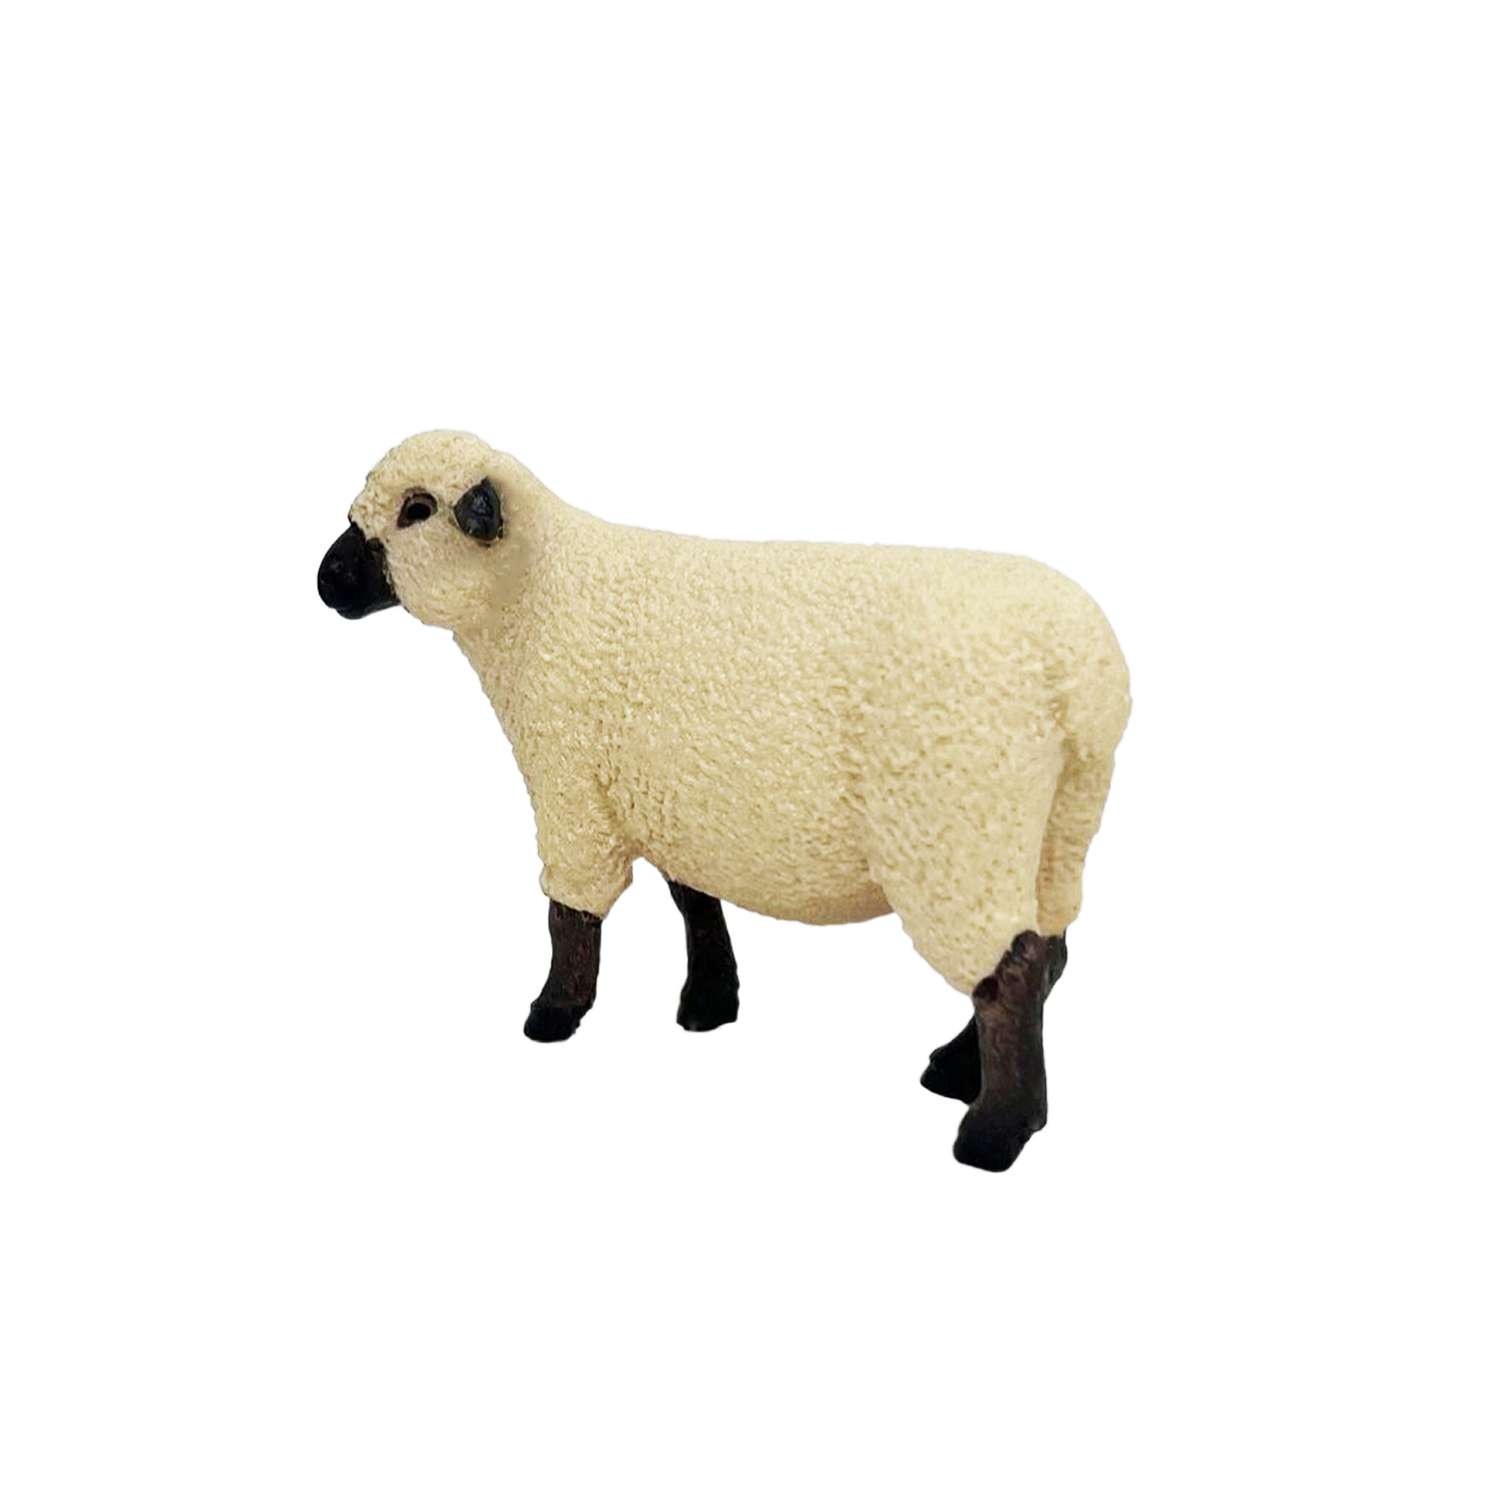 Фигурка животного Детское Время Овца породы Шропшир - фото 3